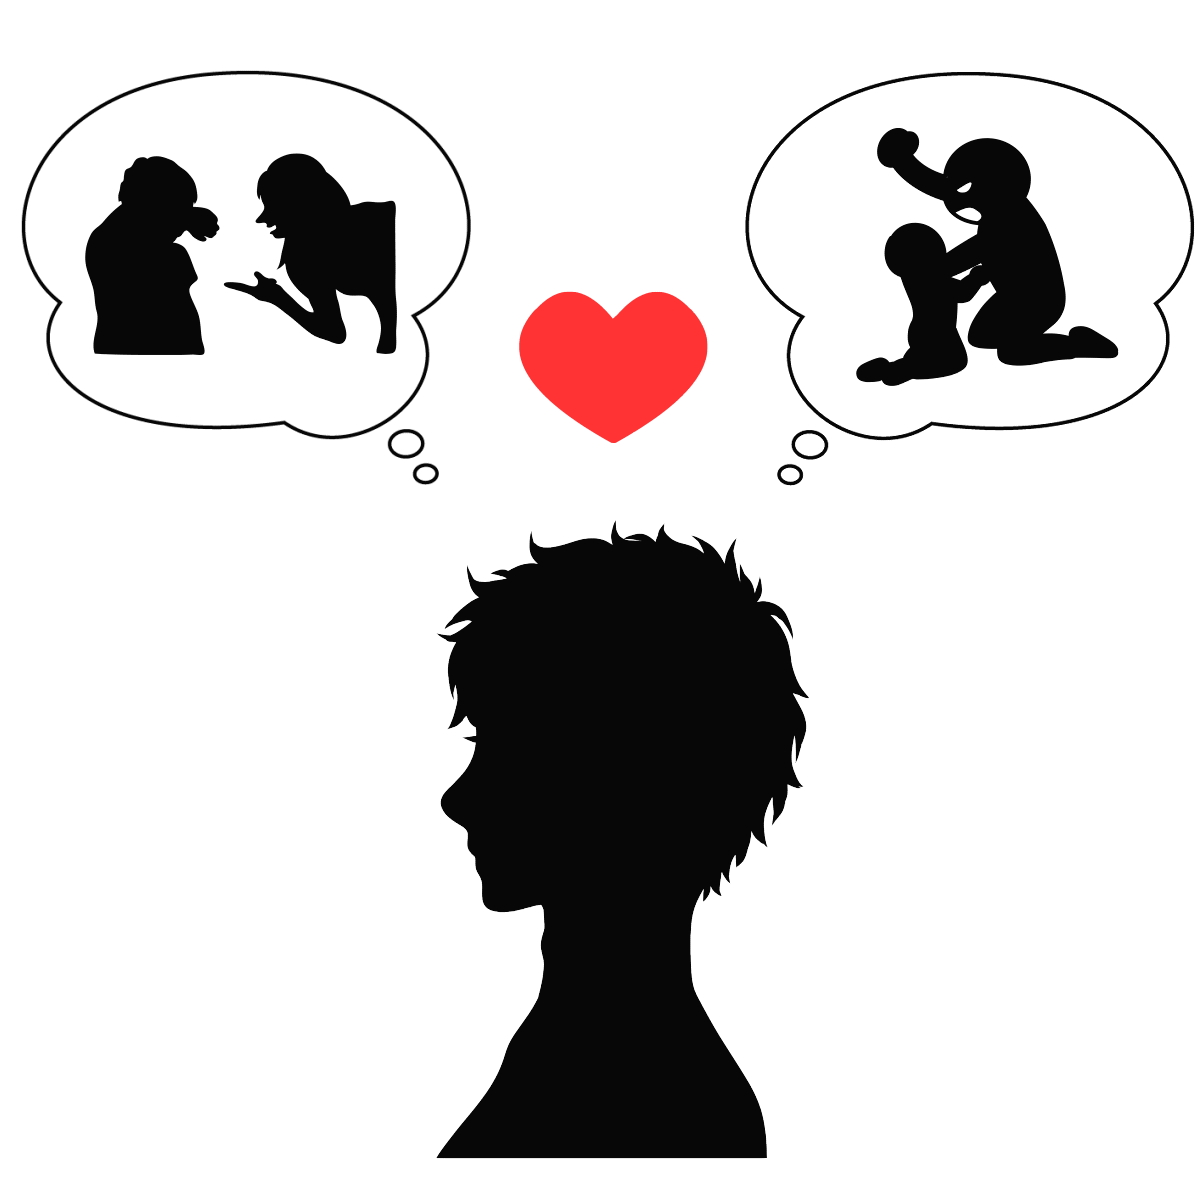 アダルトチルドレン_ピエロタイプの男性の恋愛思考パターンを表すイラスト